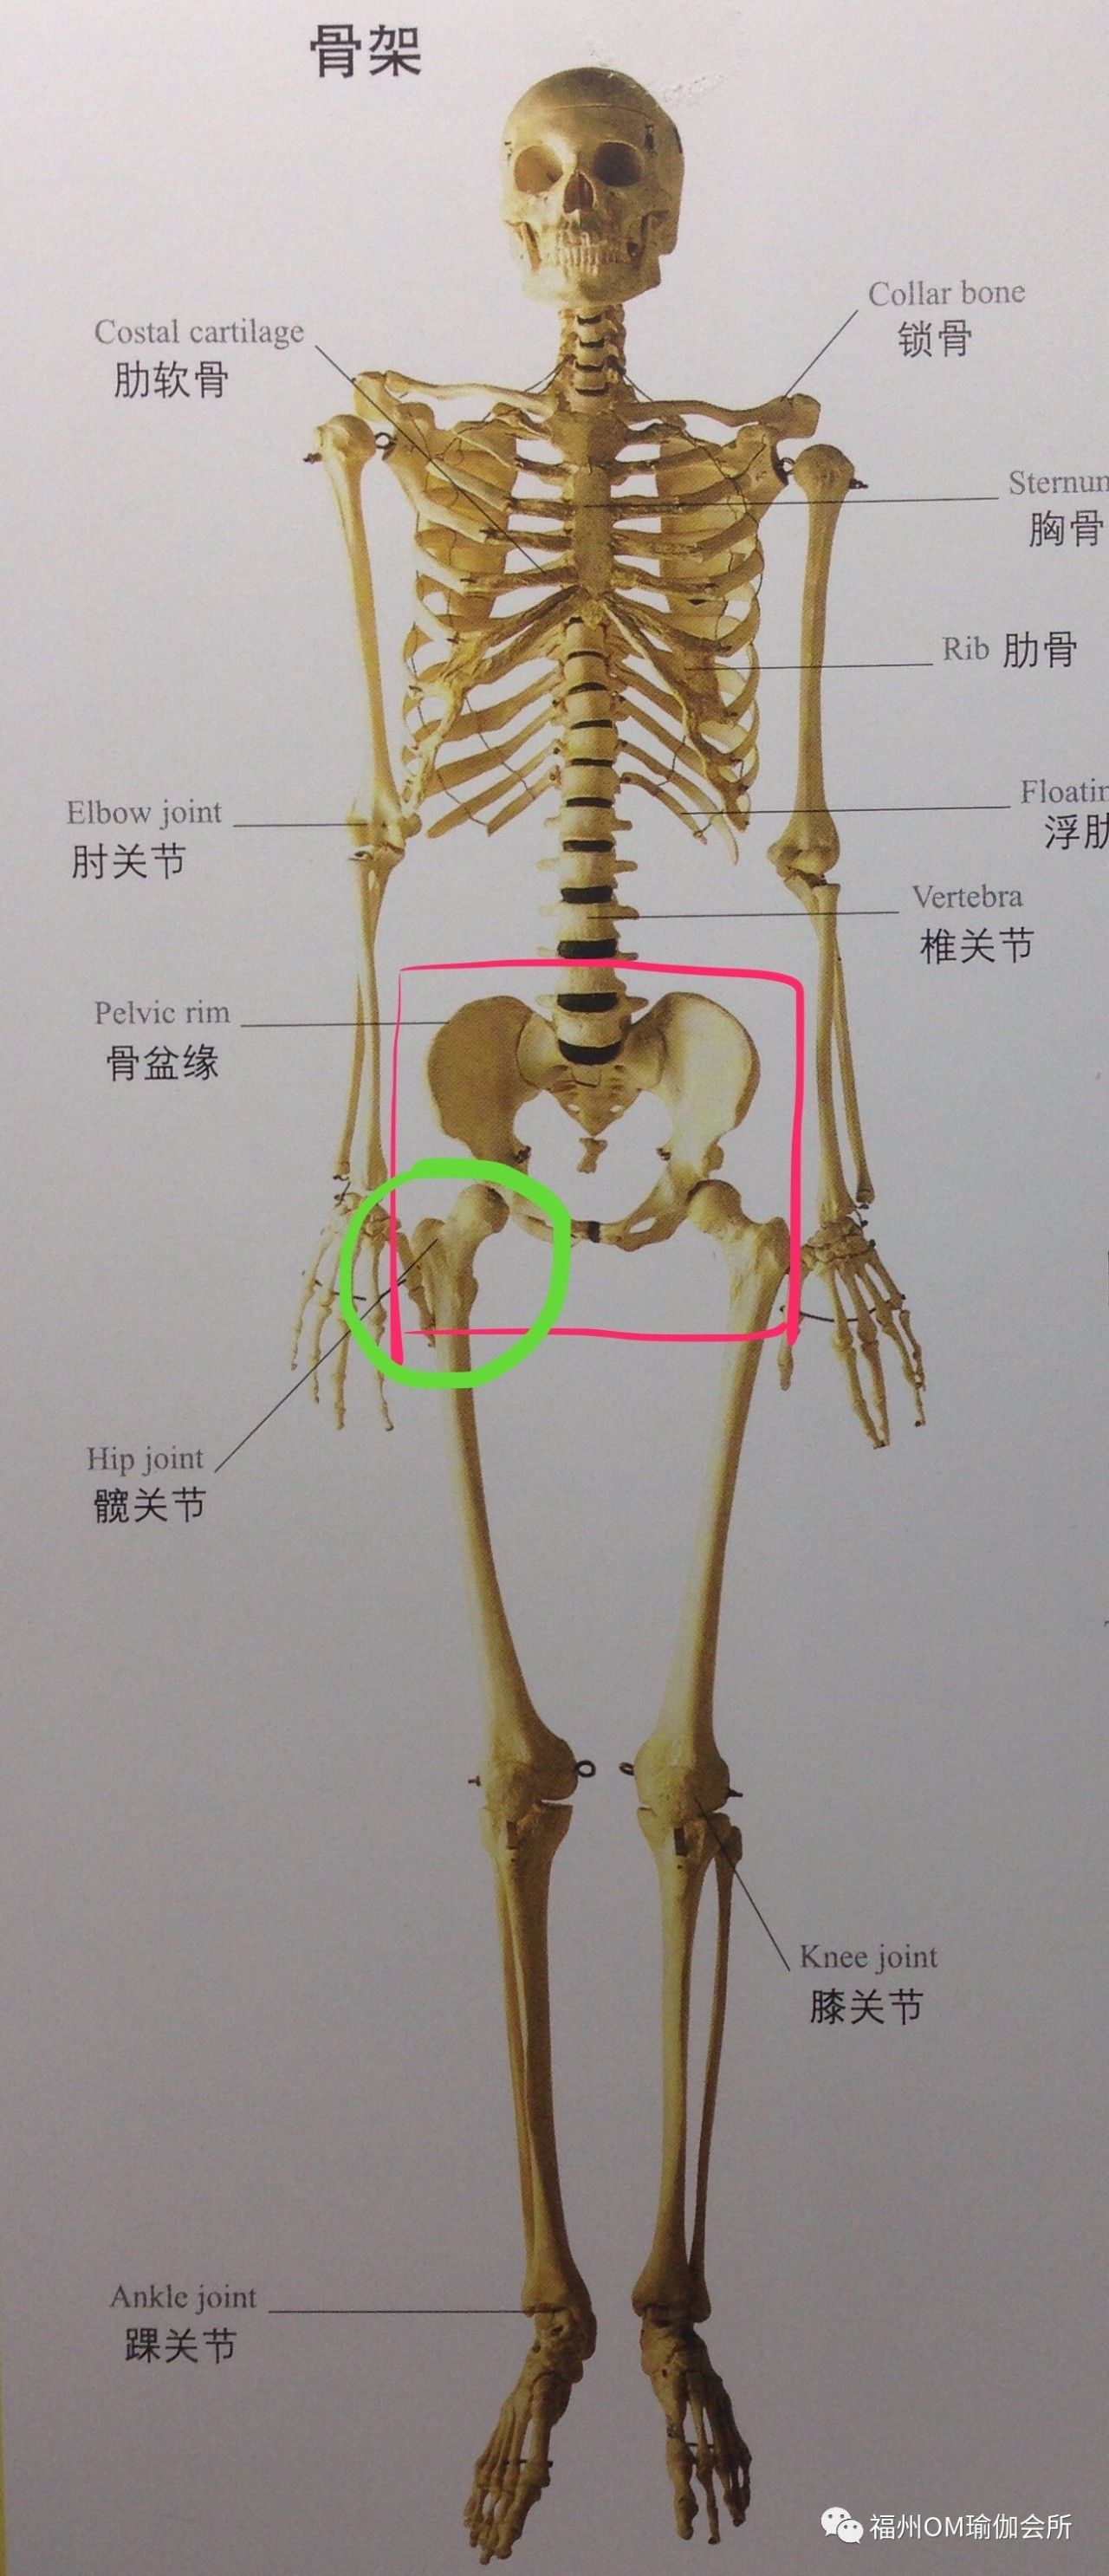 而已!而髋关节,是指连接骨盆和股骨的一个关节